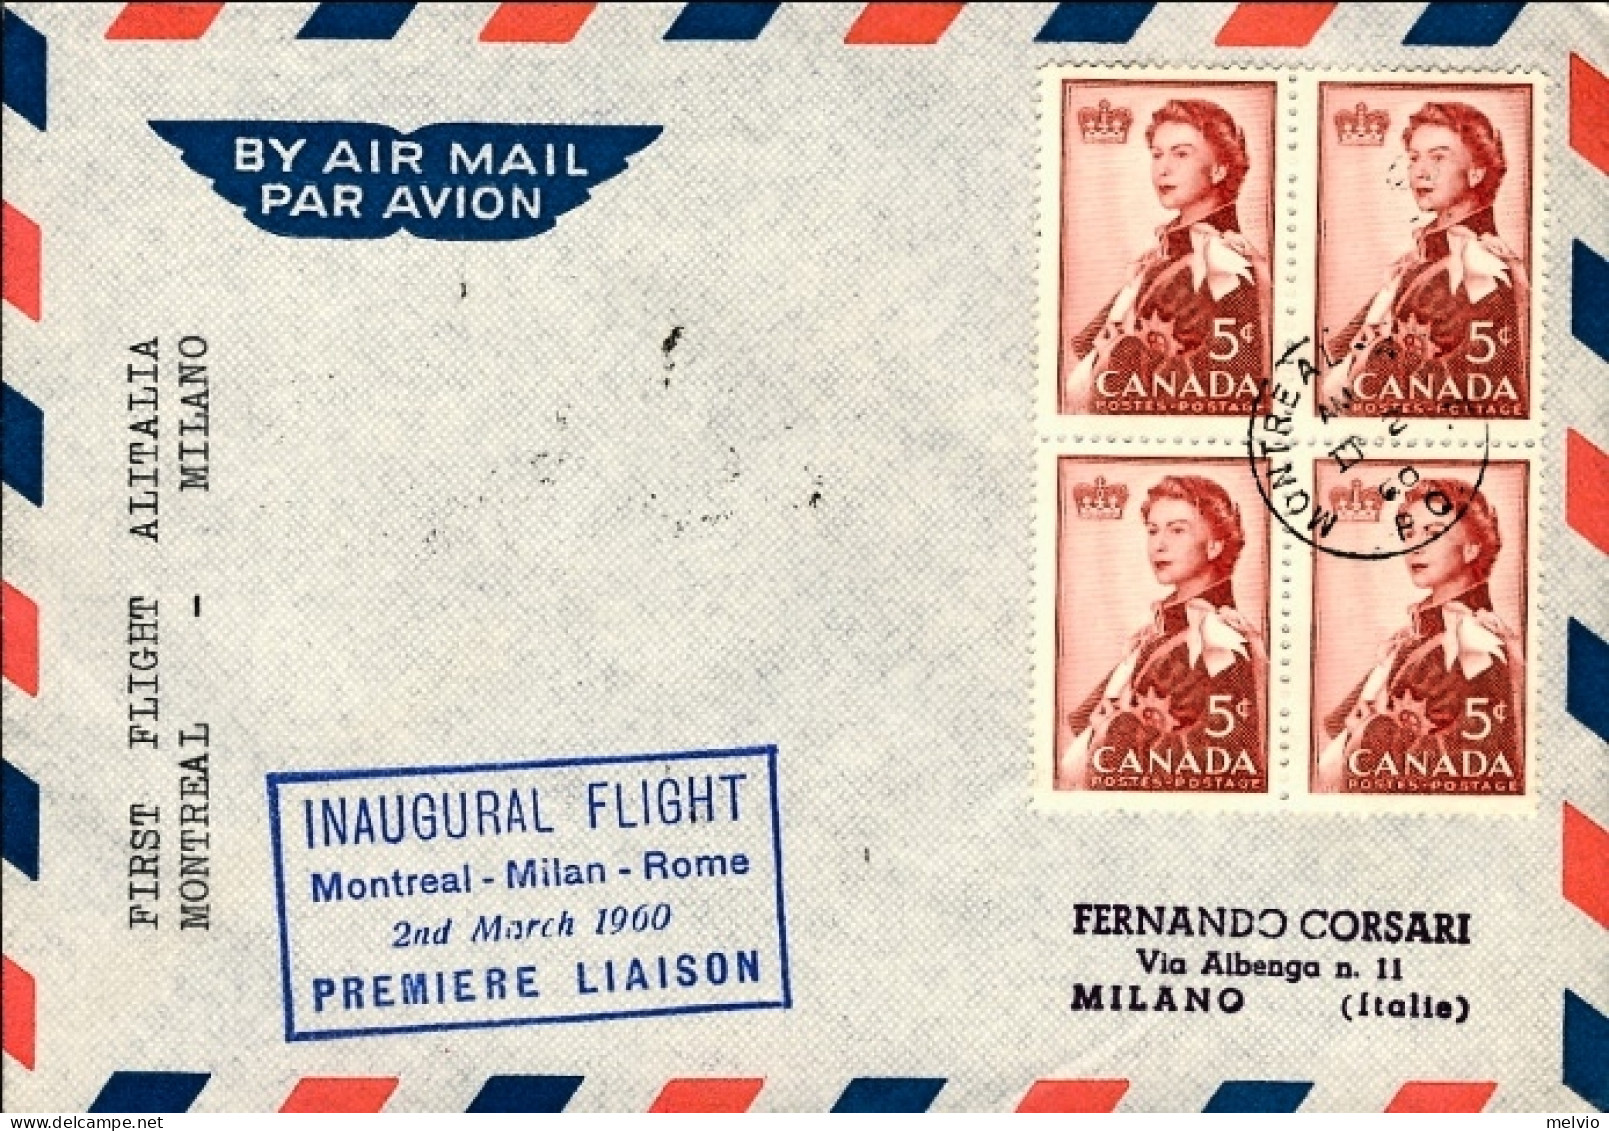 1960-Canada I^volo Alitalia Montreal Milano Del 2 Marzo, Cat.Pellegrini N.1098 E - Premiers Vols